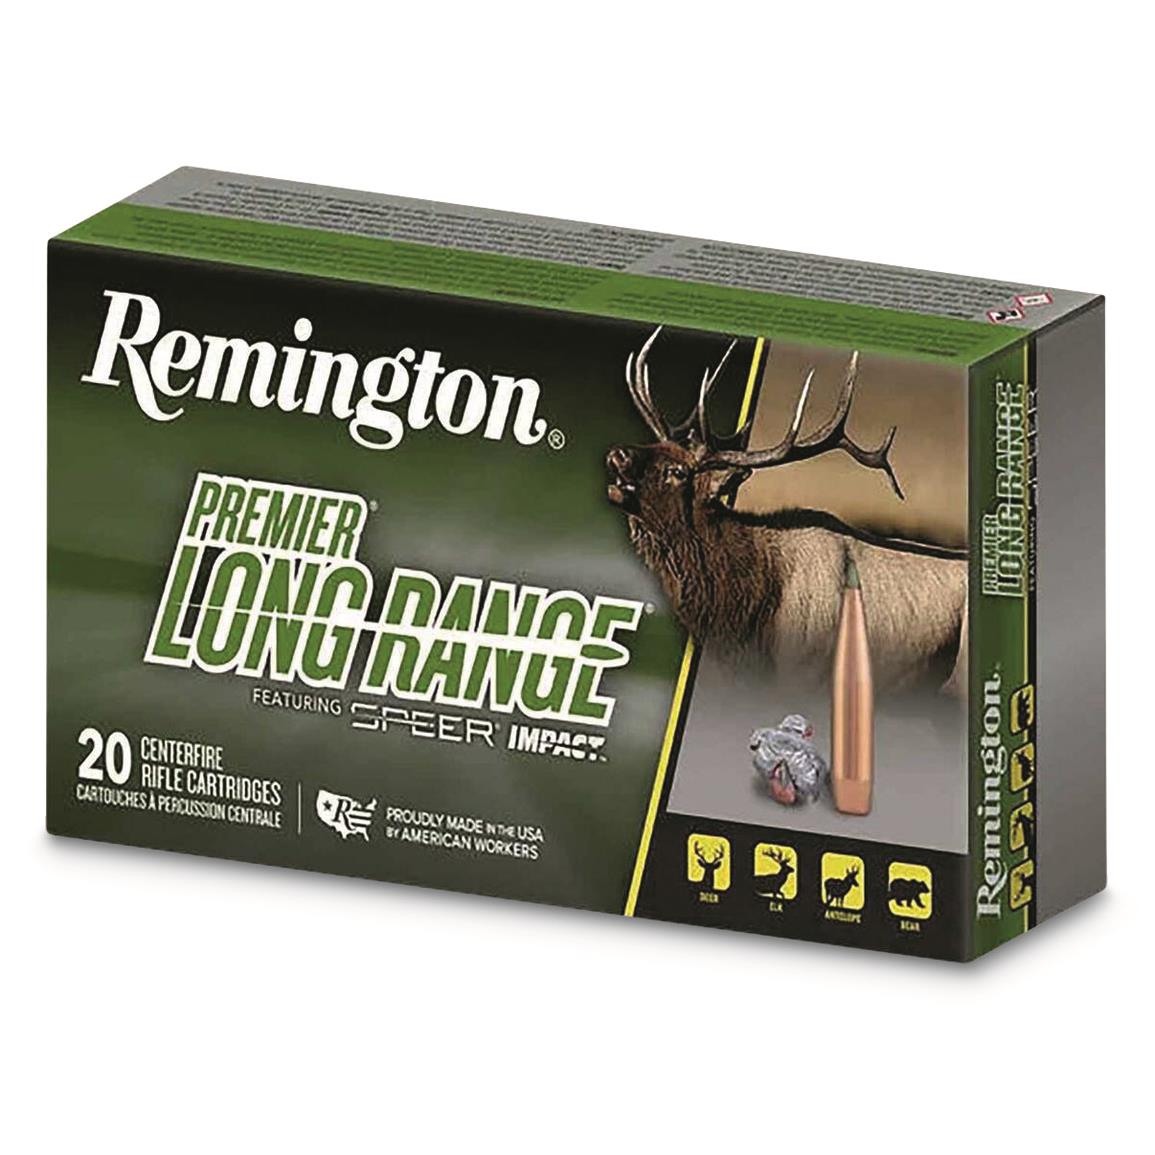 Remington Premier Long Range, 6mm Creedmoor, Speer Impact, 109 Grain, 20 Rounds